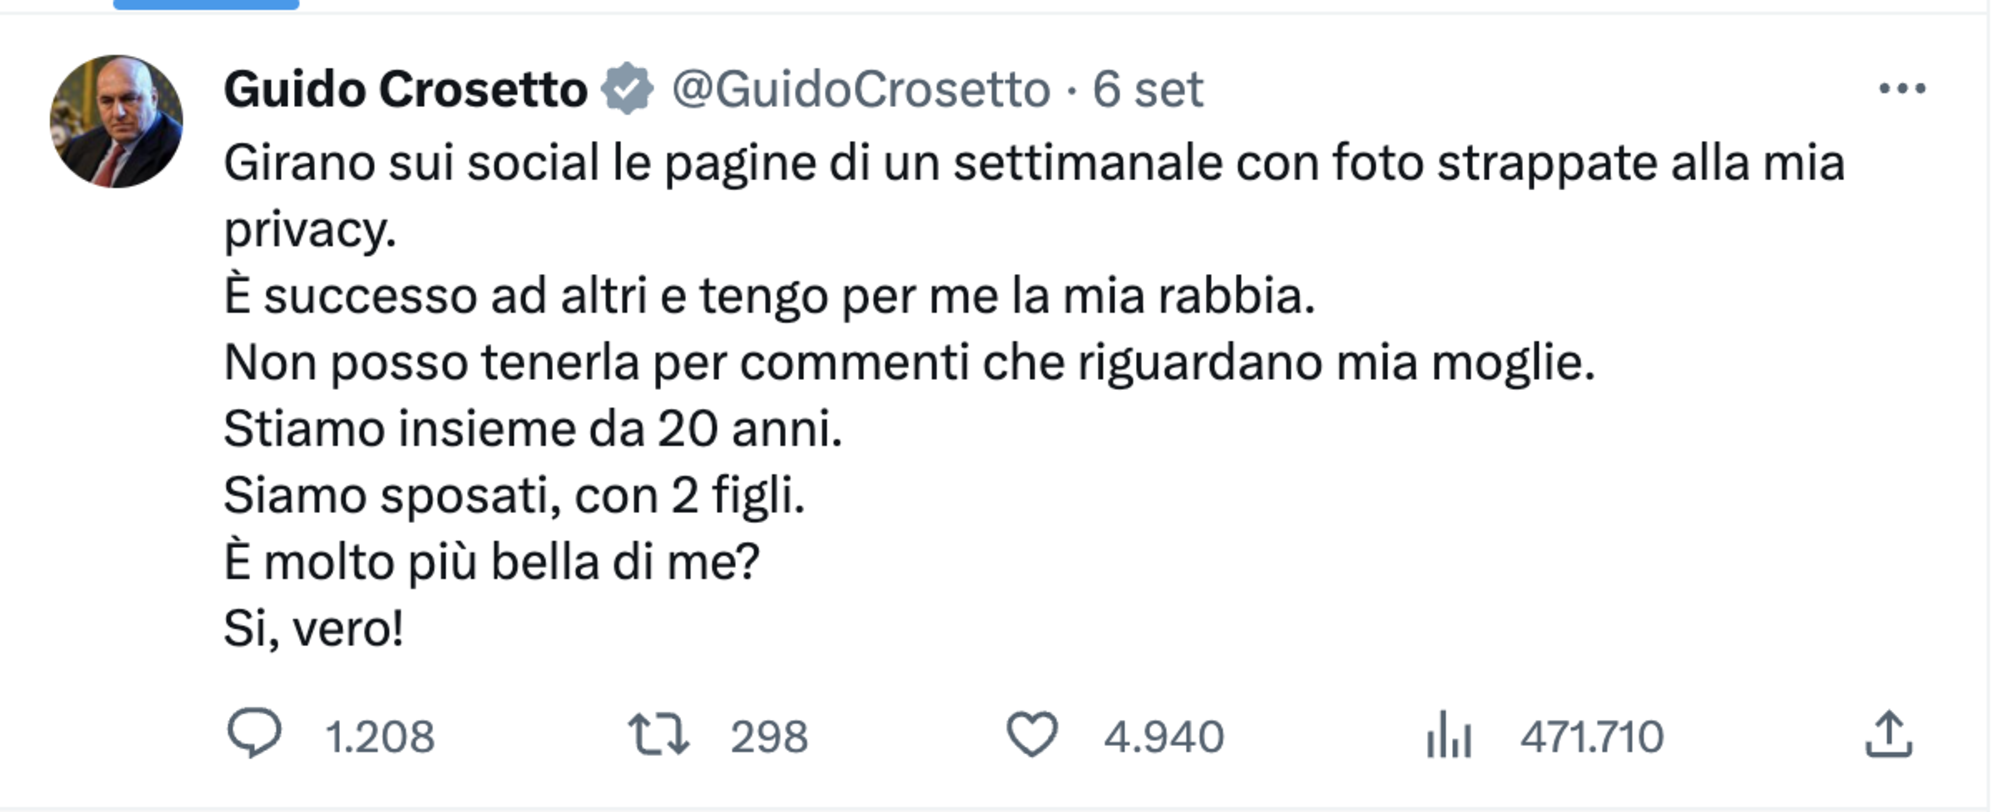 Il tweet reale di Crosetto